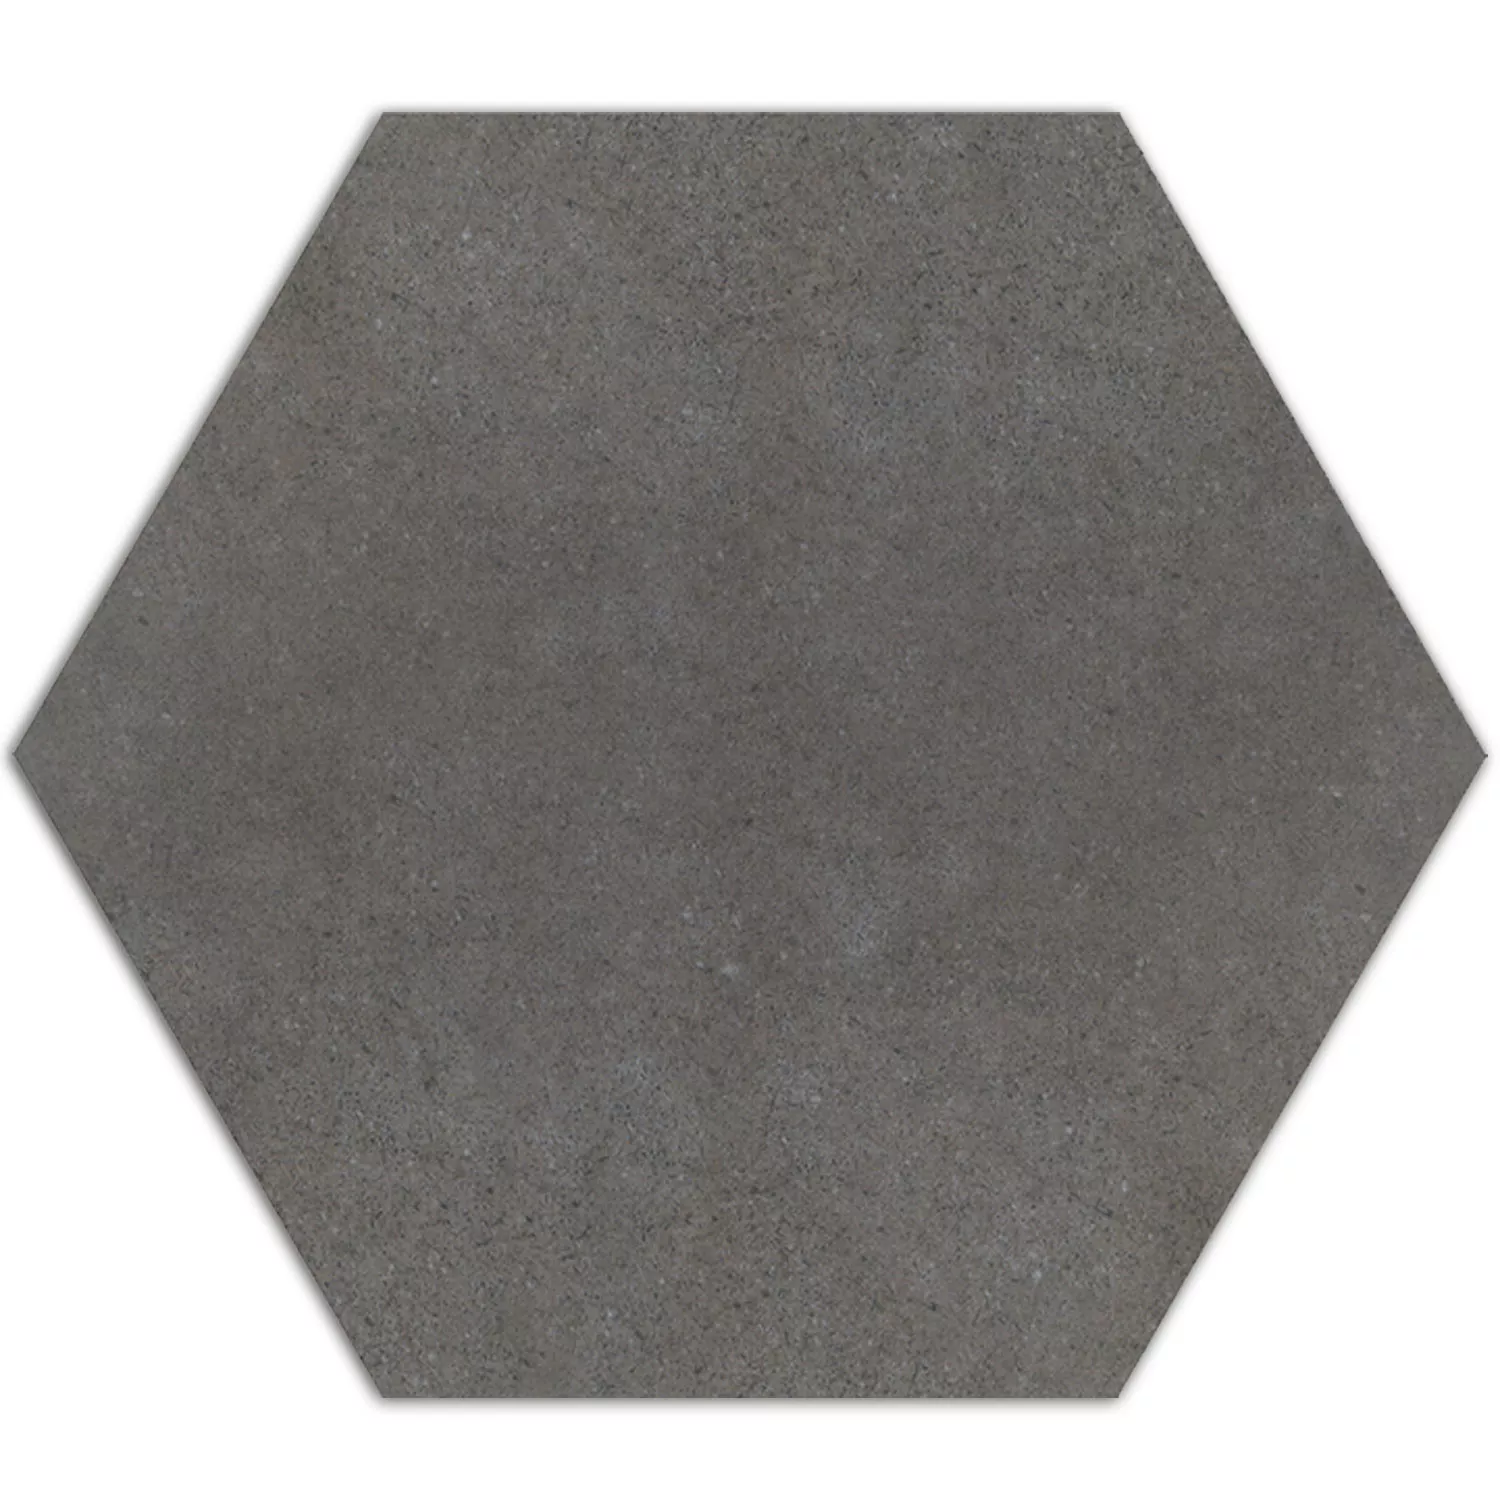 Sample Cement Tiles Optic Hexagon Floor Tiles Alicante Dark Grey